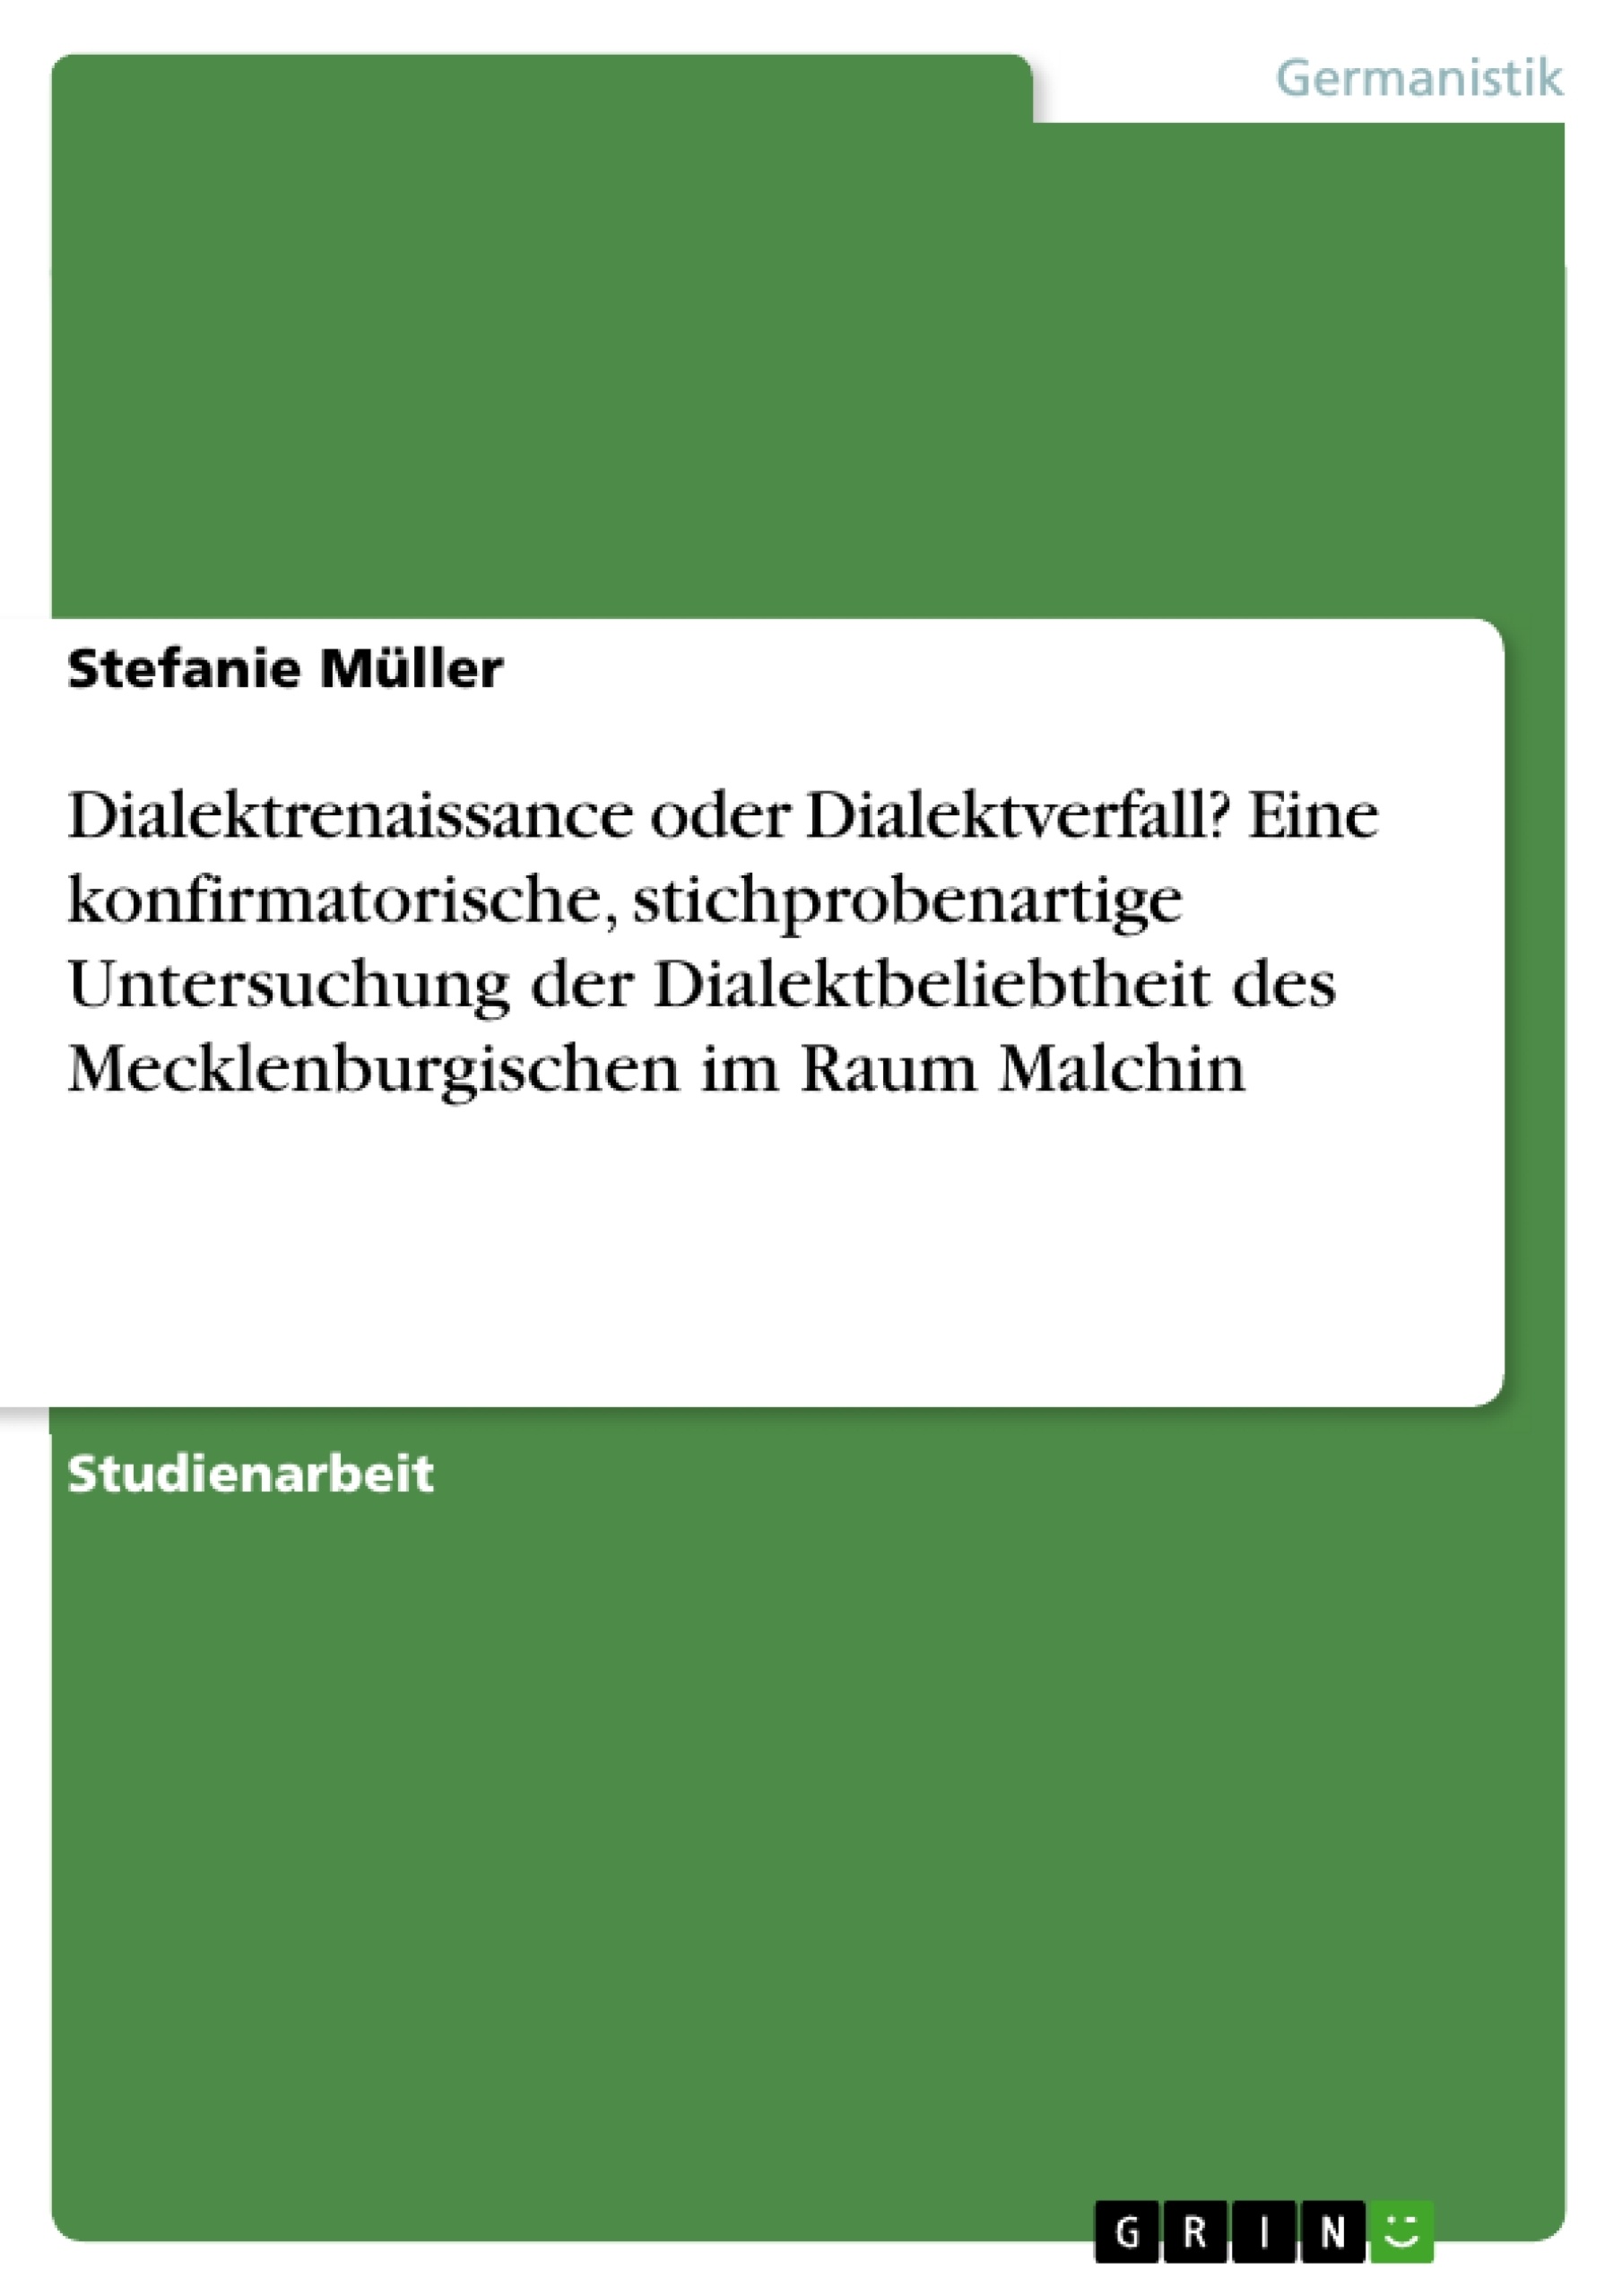 Title: Dialektrenaissance oder Dialektverfall? Eine konfirmatorische, stichprobenartige Untersuchung der Dialektbeliebtheit des Mecklenburgischen im Raum Malchin